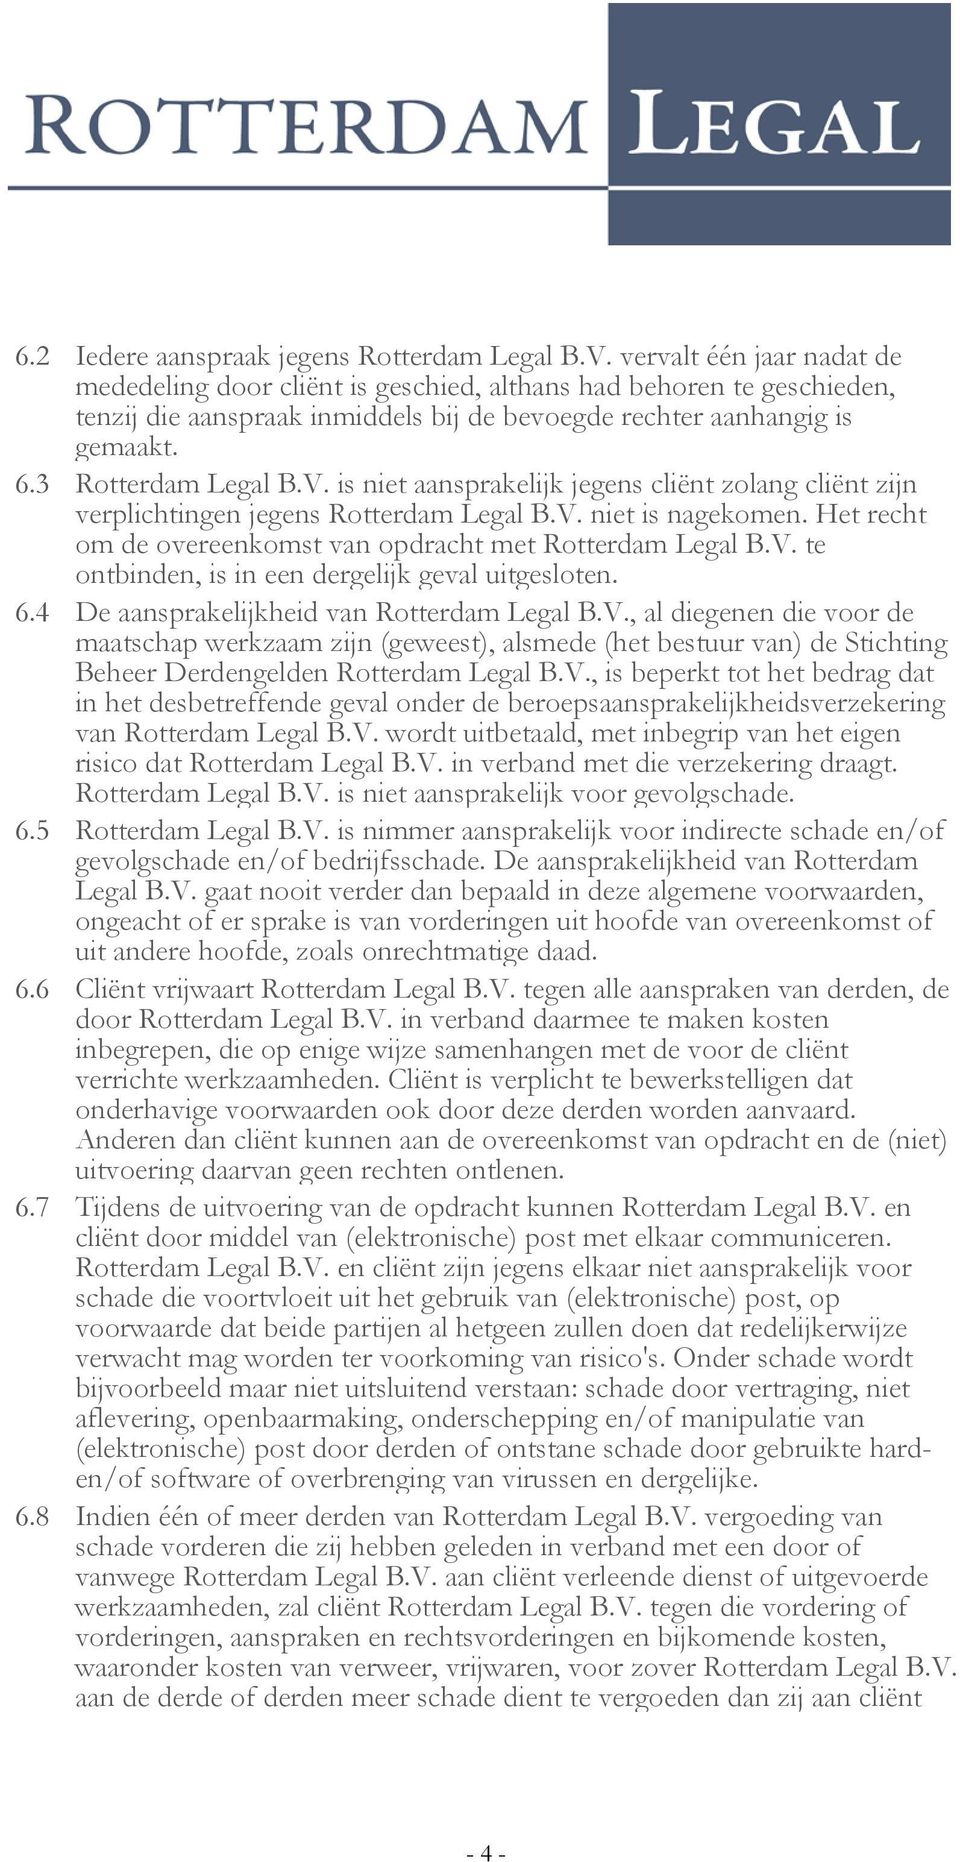 is niet aansprakelijk jegens cliënt zolang cliënt zijn verplichtingen jegens Rotterdam Legal B.V. niet is nagekomen. Het recht om de overeenkomst van opdracht met Rotterdam Legal B.V. te ontbinden, is in een dergelijk geval uitgesloten.